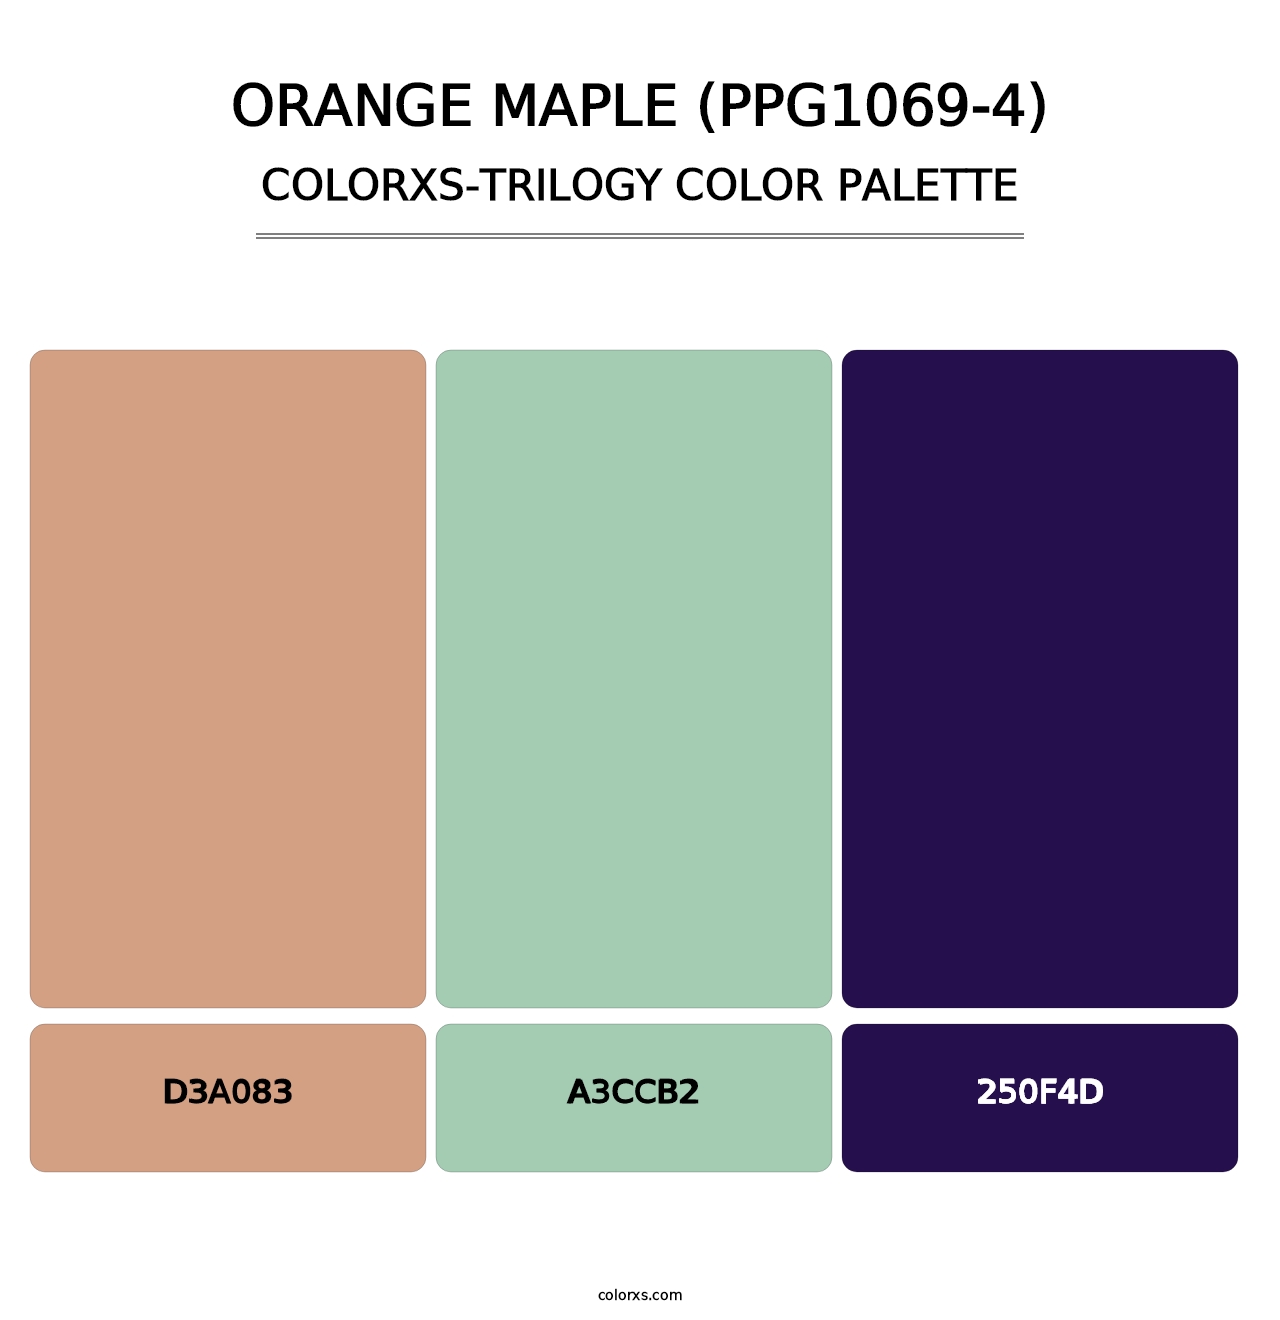 Orange Maple (PPG1069-4) - Colorxs Trilogy Palette